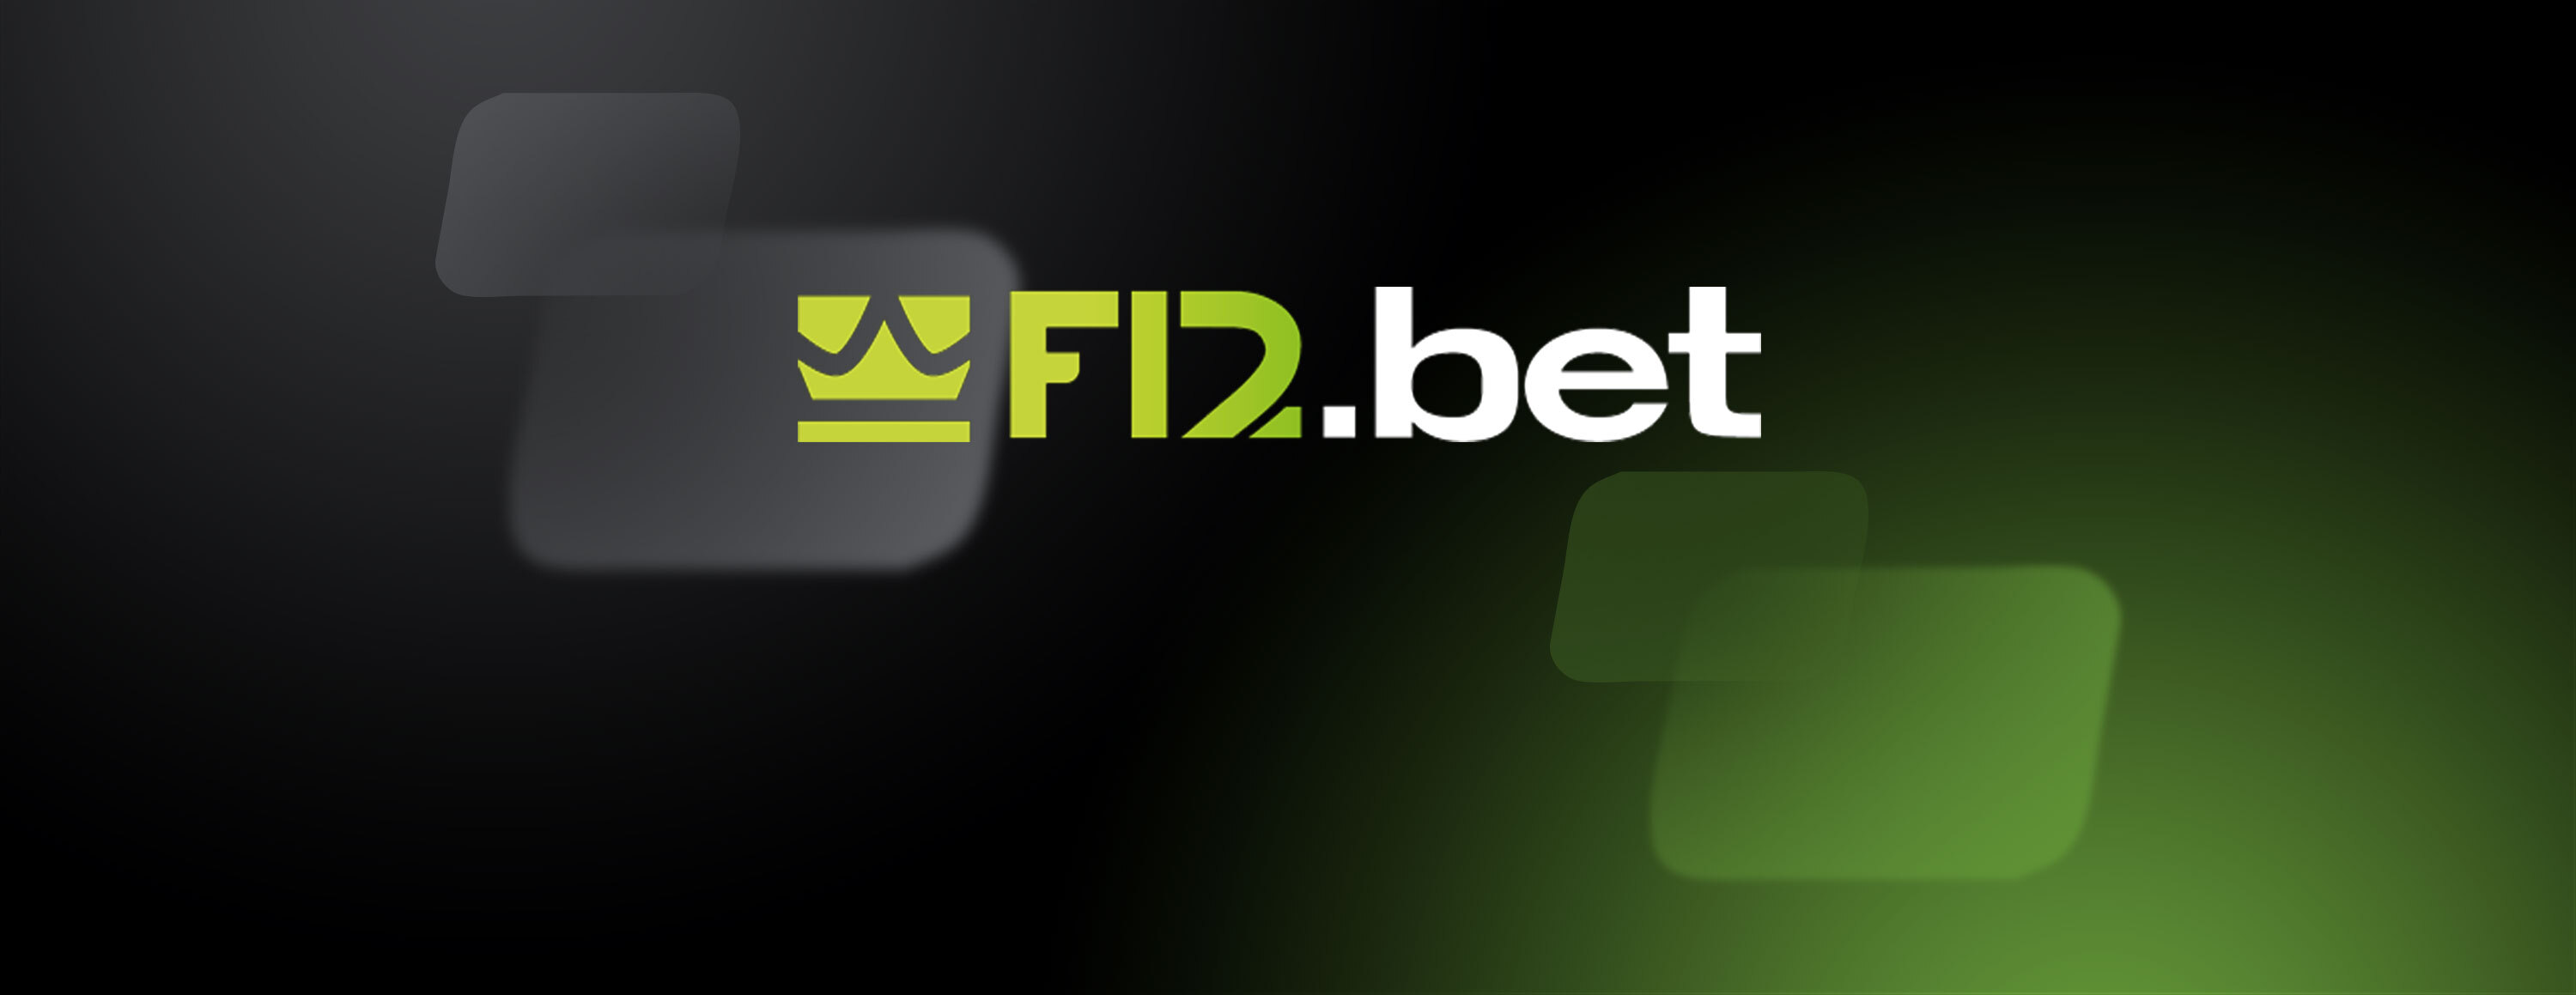 F12 bet apostas esportivas: leia nosso guia completo sobre o site